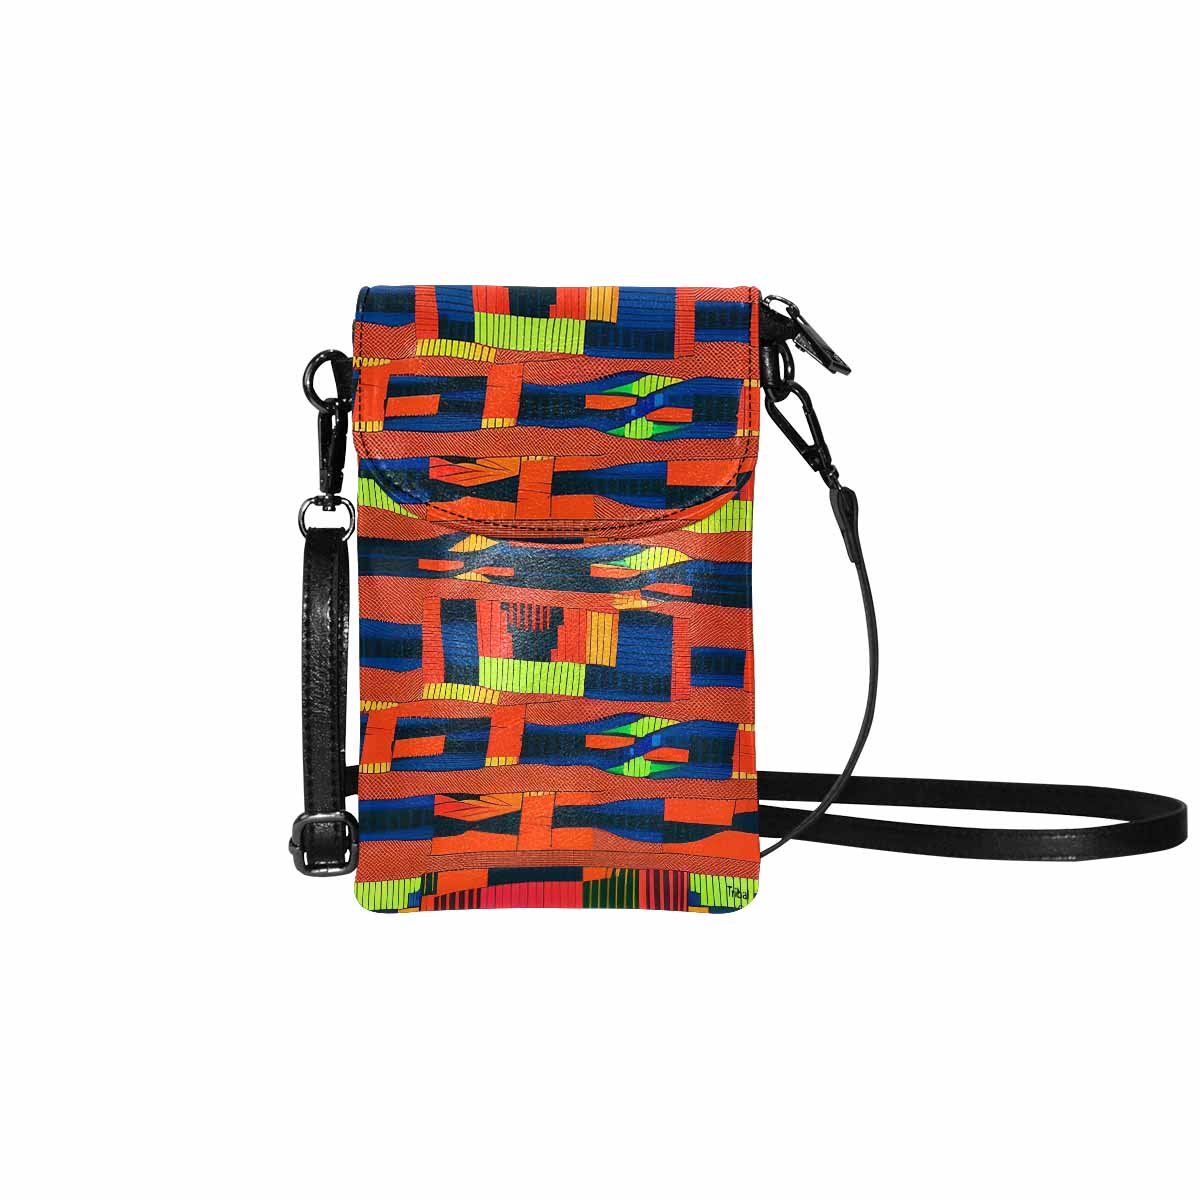 African art, cell phone, keys purse, design 44